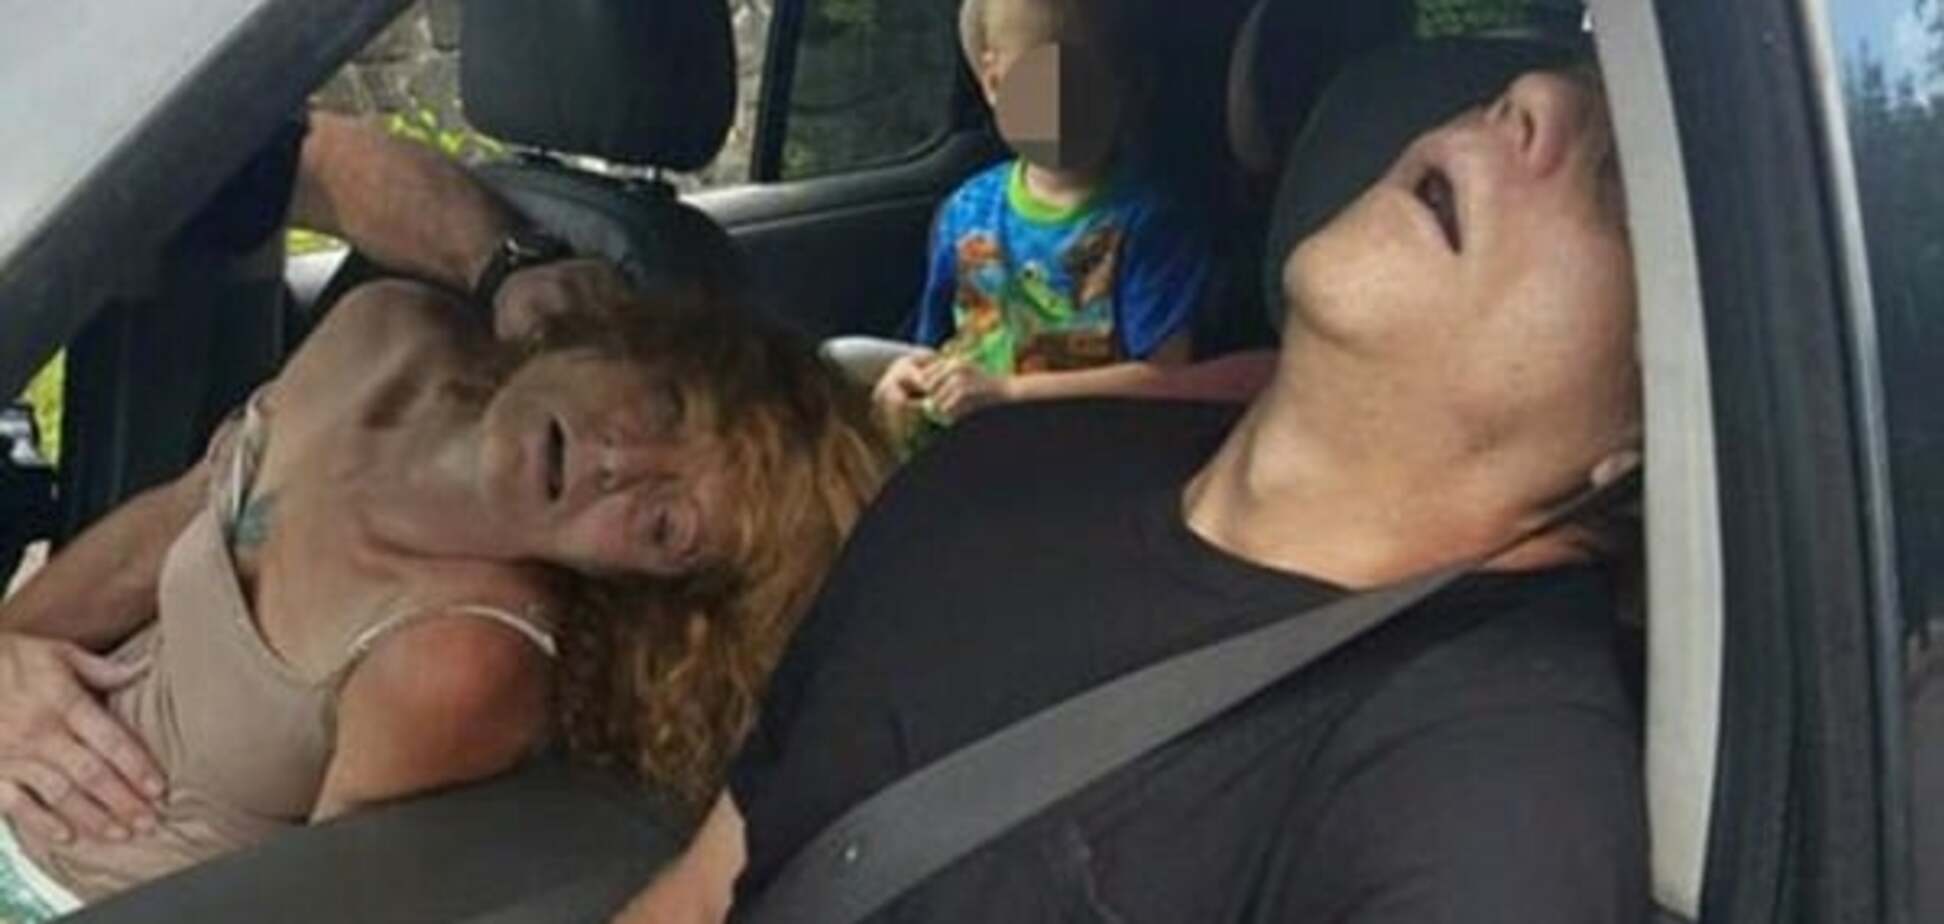 Мороз по коже: полиция США опубликовала ужасающие снимки семейной пары 'в передозировке'